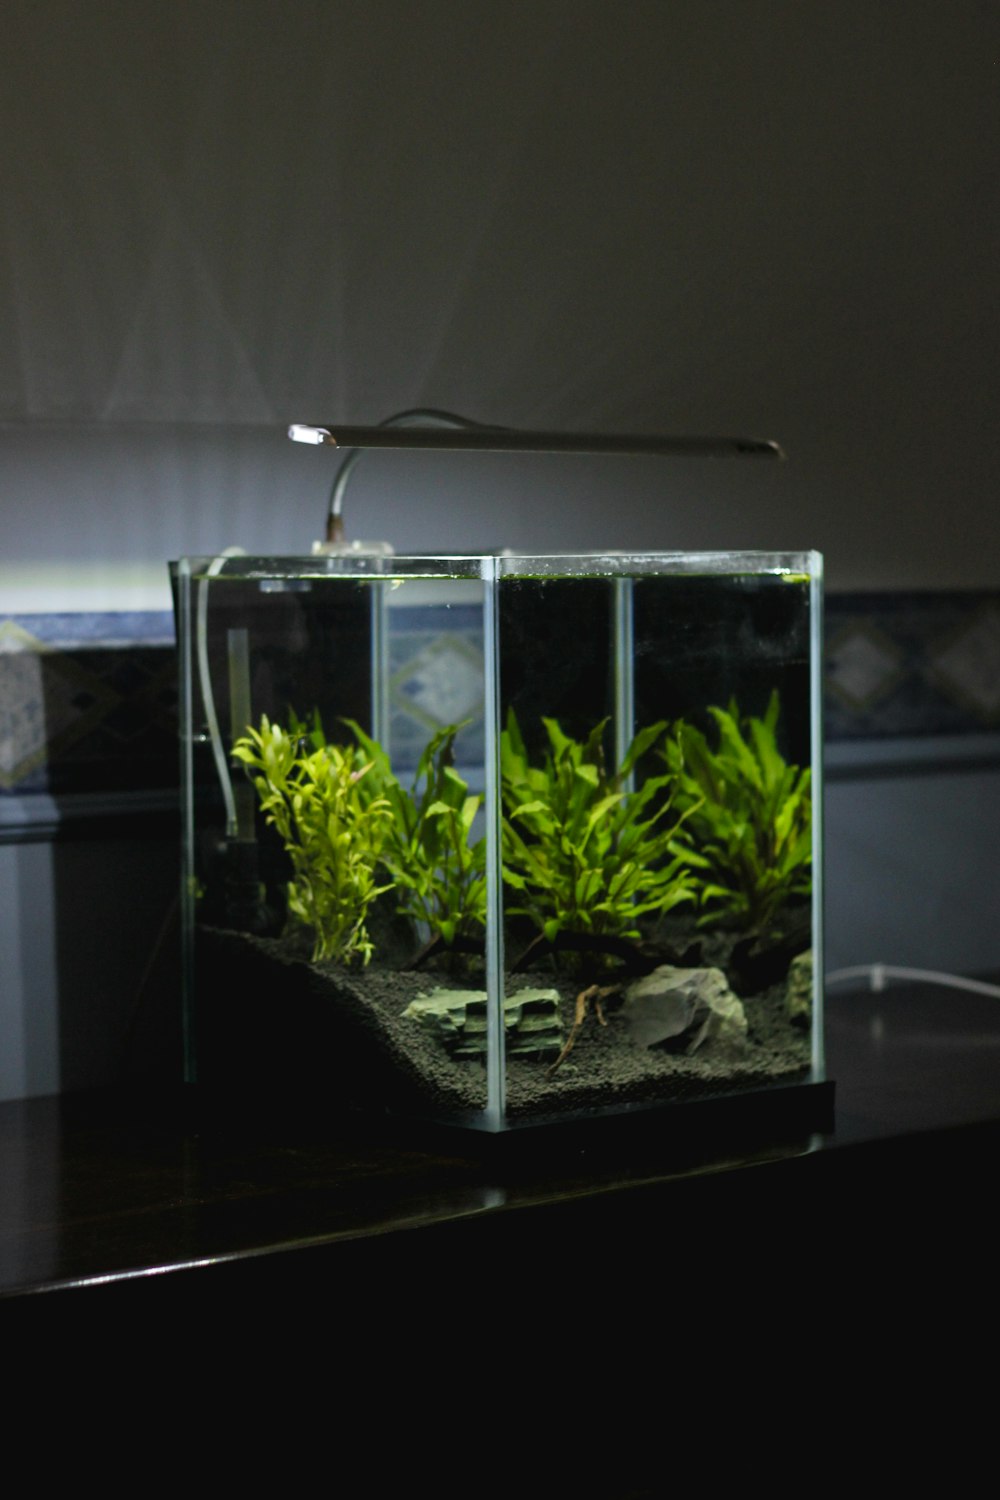 투명한 유리 테라리움에 있는 녹색 잎 식물 위에 조명이 켜진 램프